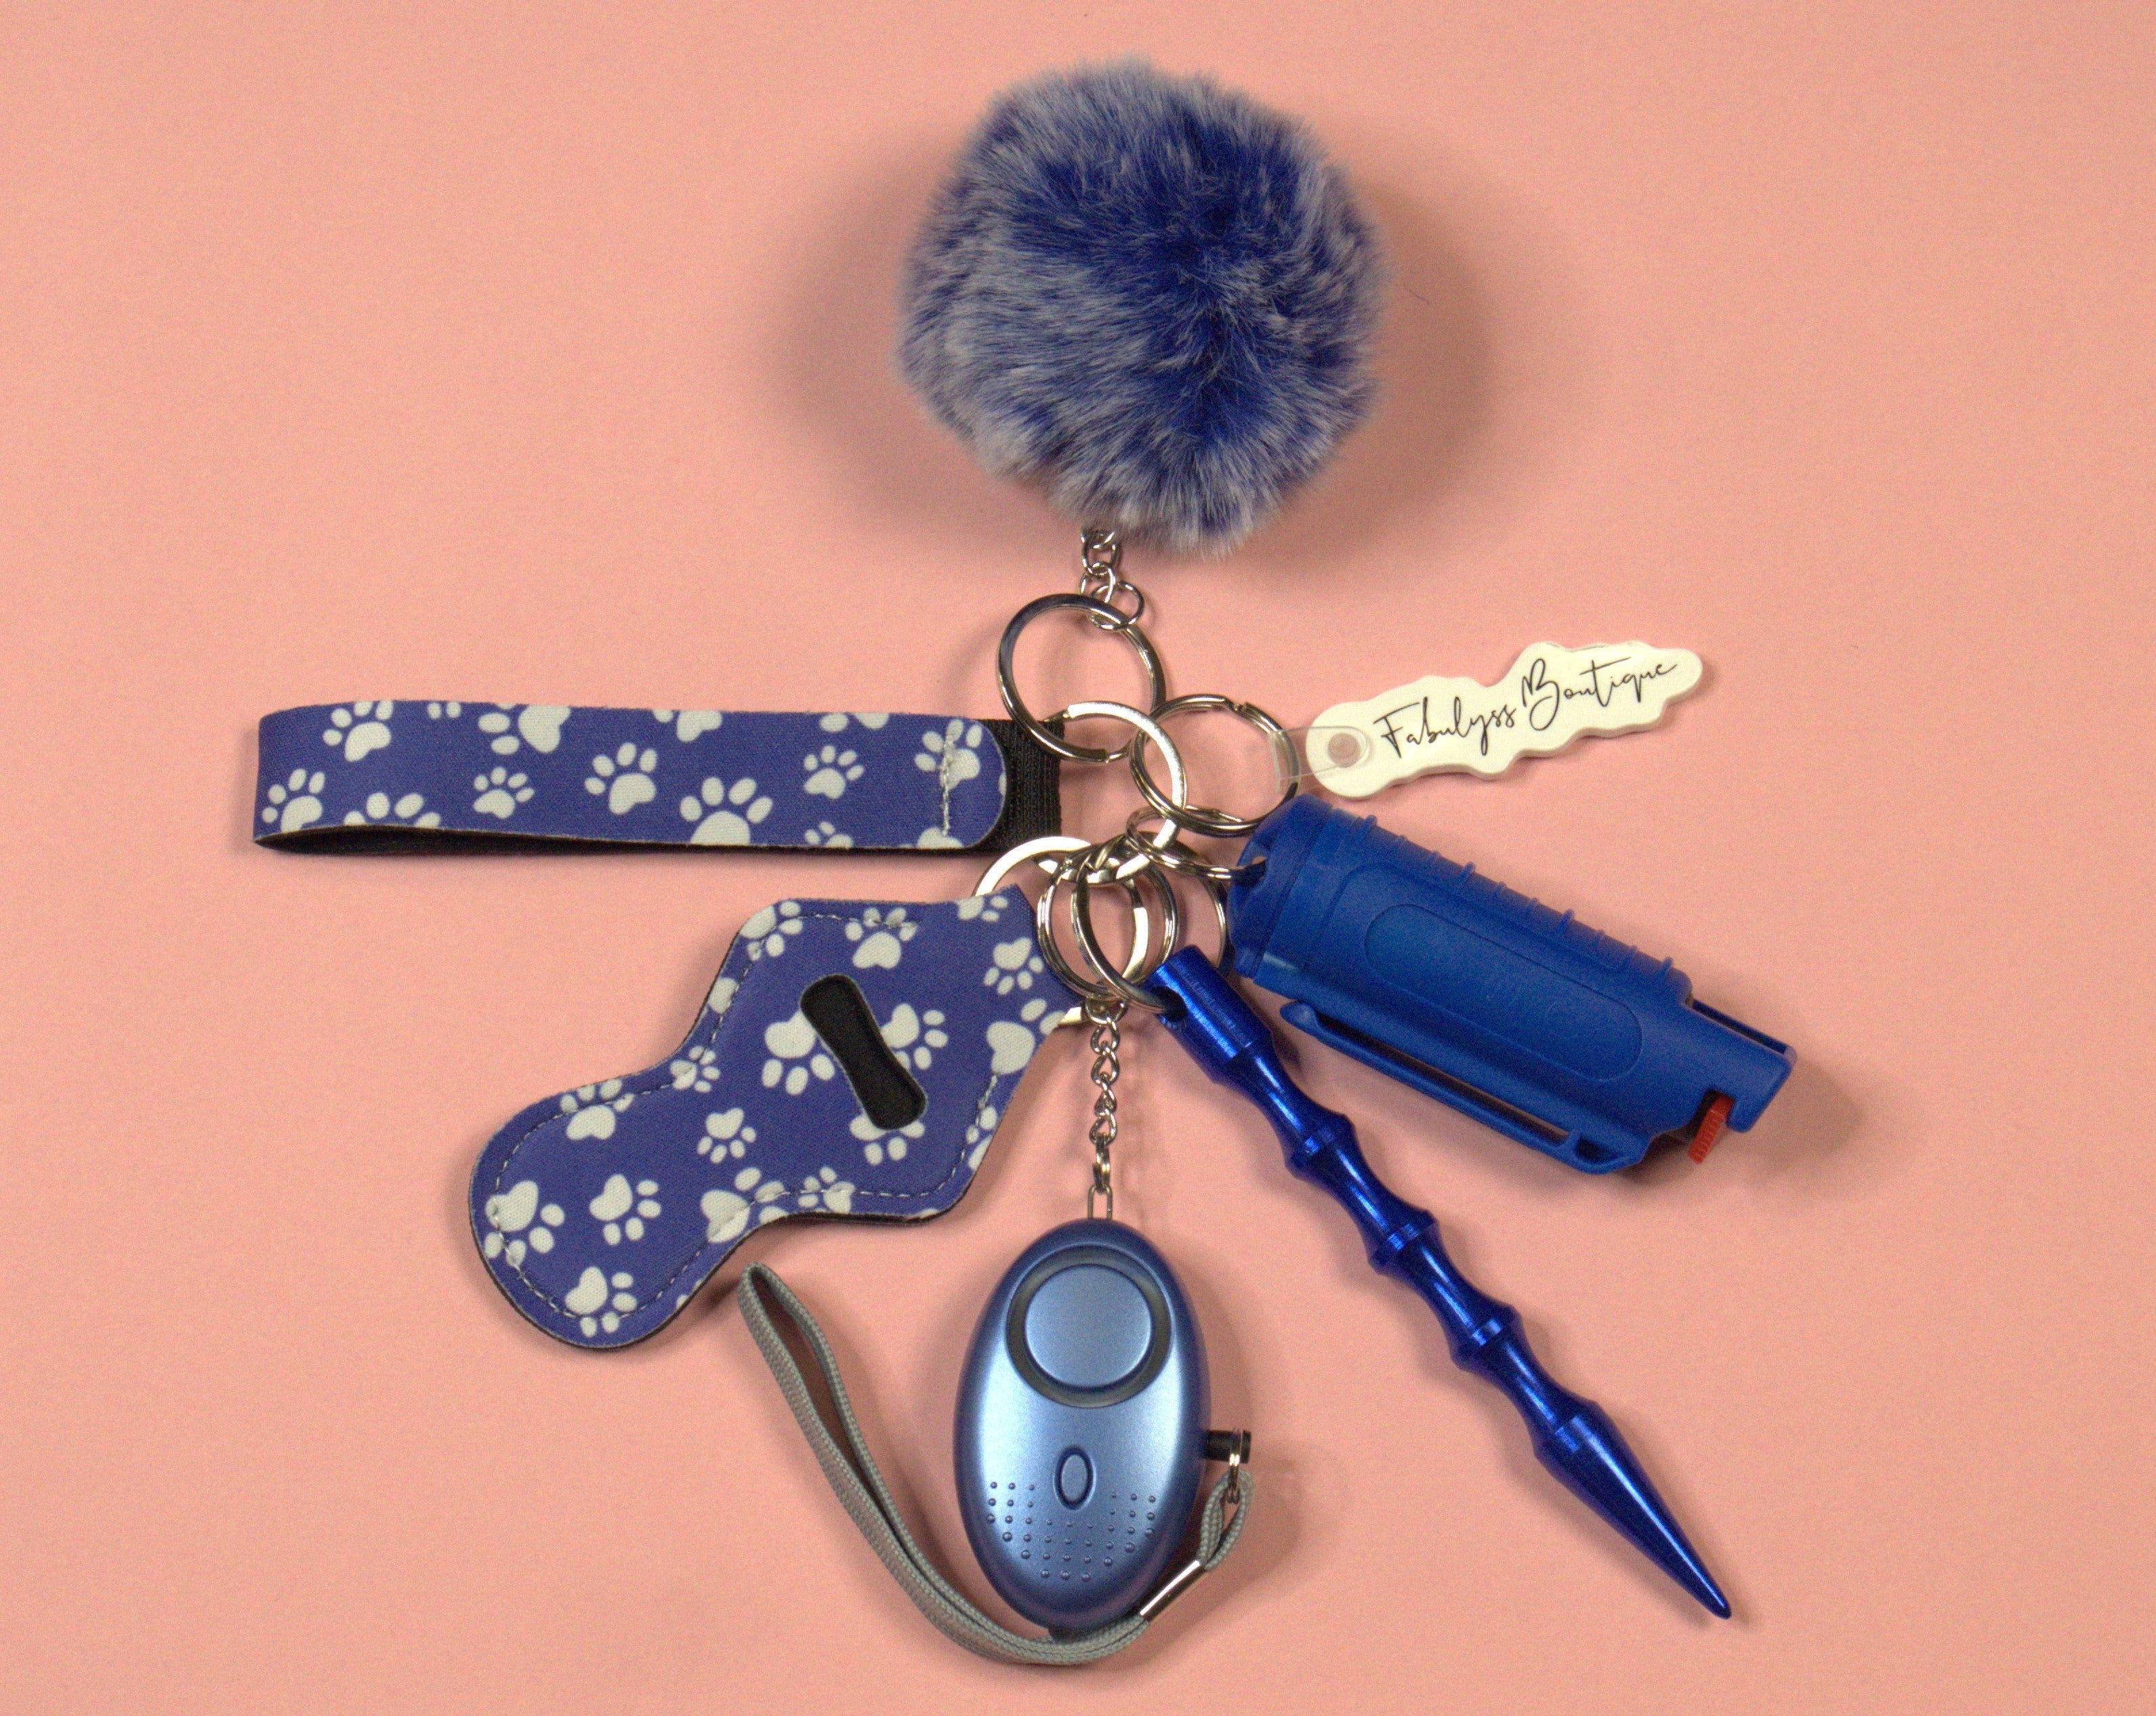 Chewy Self Defense Keychain